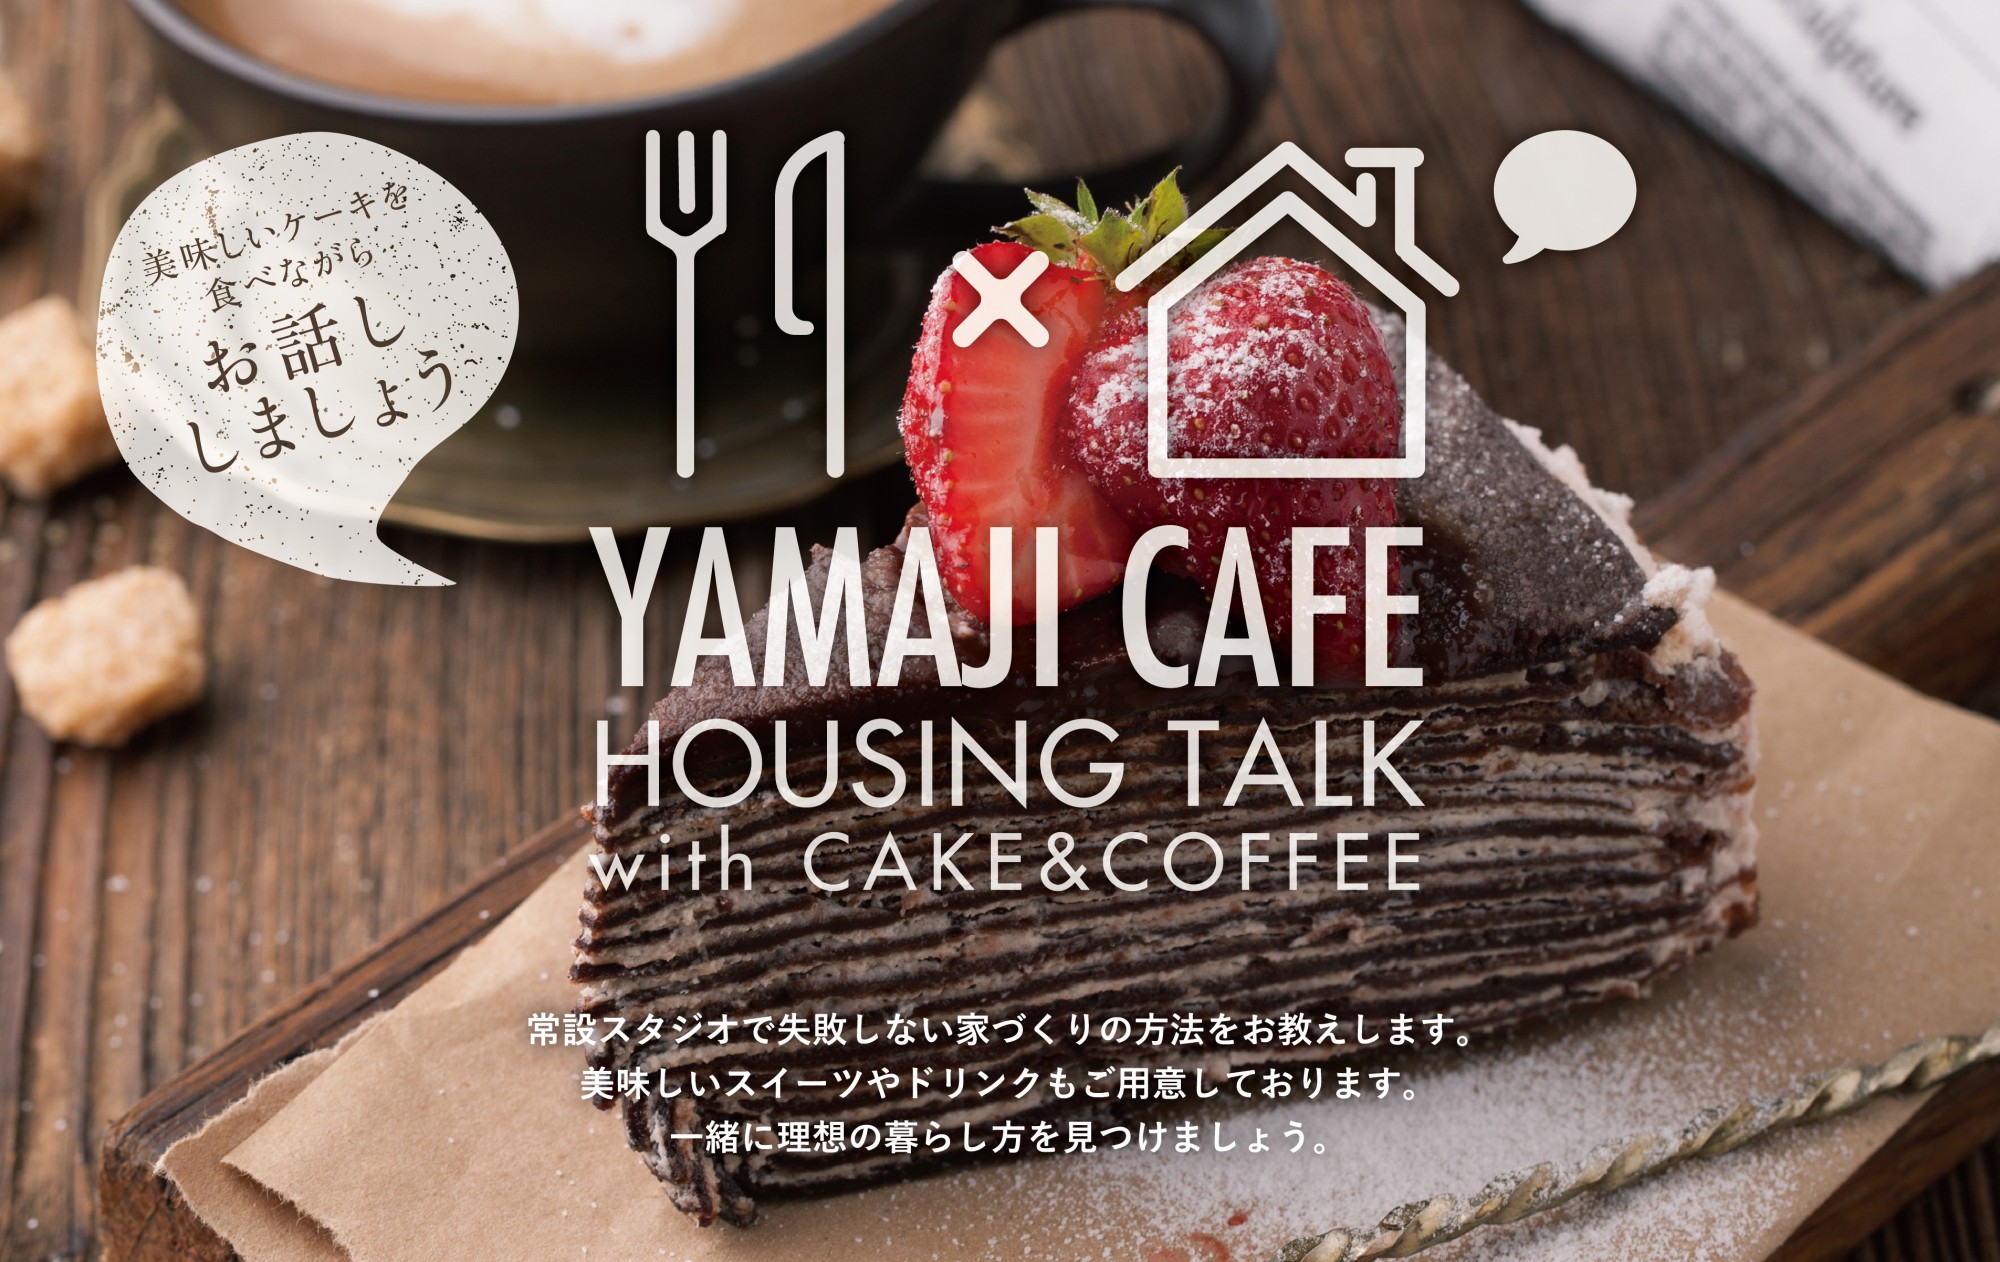 楽しくお話 おいしいケーキも おうちづくりcafe開催のお知らせ イベント 見学会 カッコいい住宅見学会開催中 徳島 の家づくりはヤマジホームへ